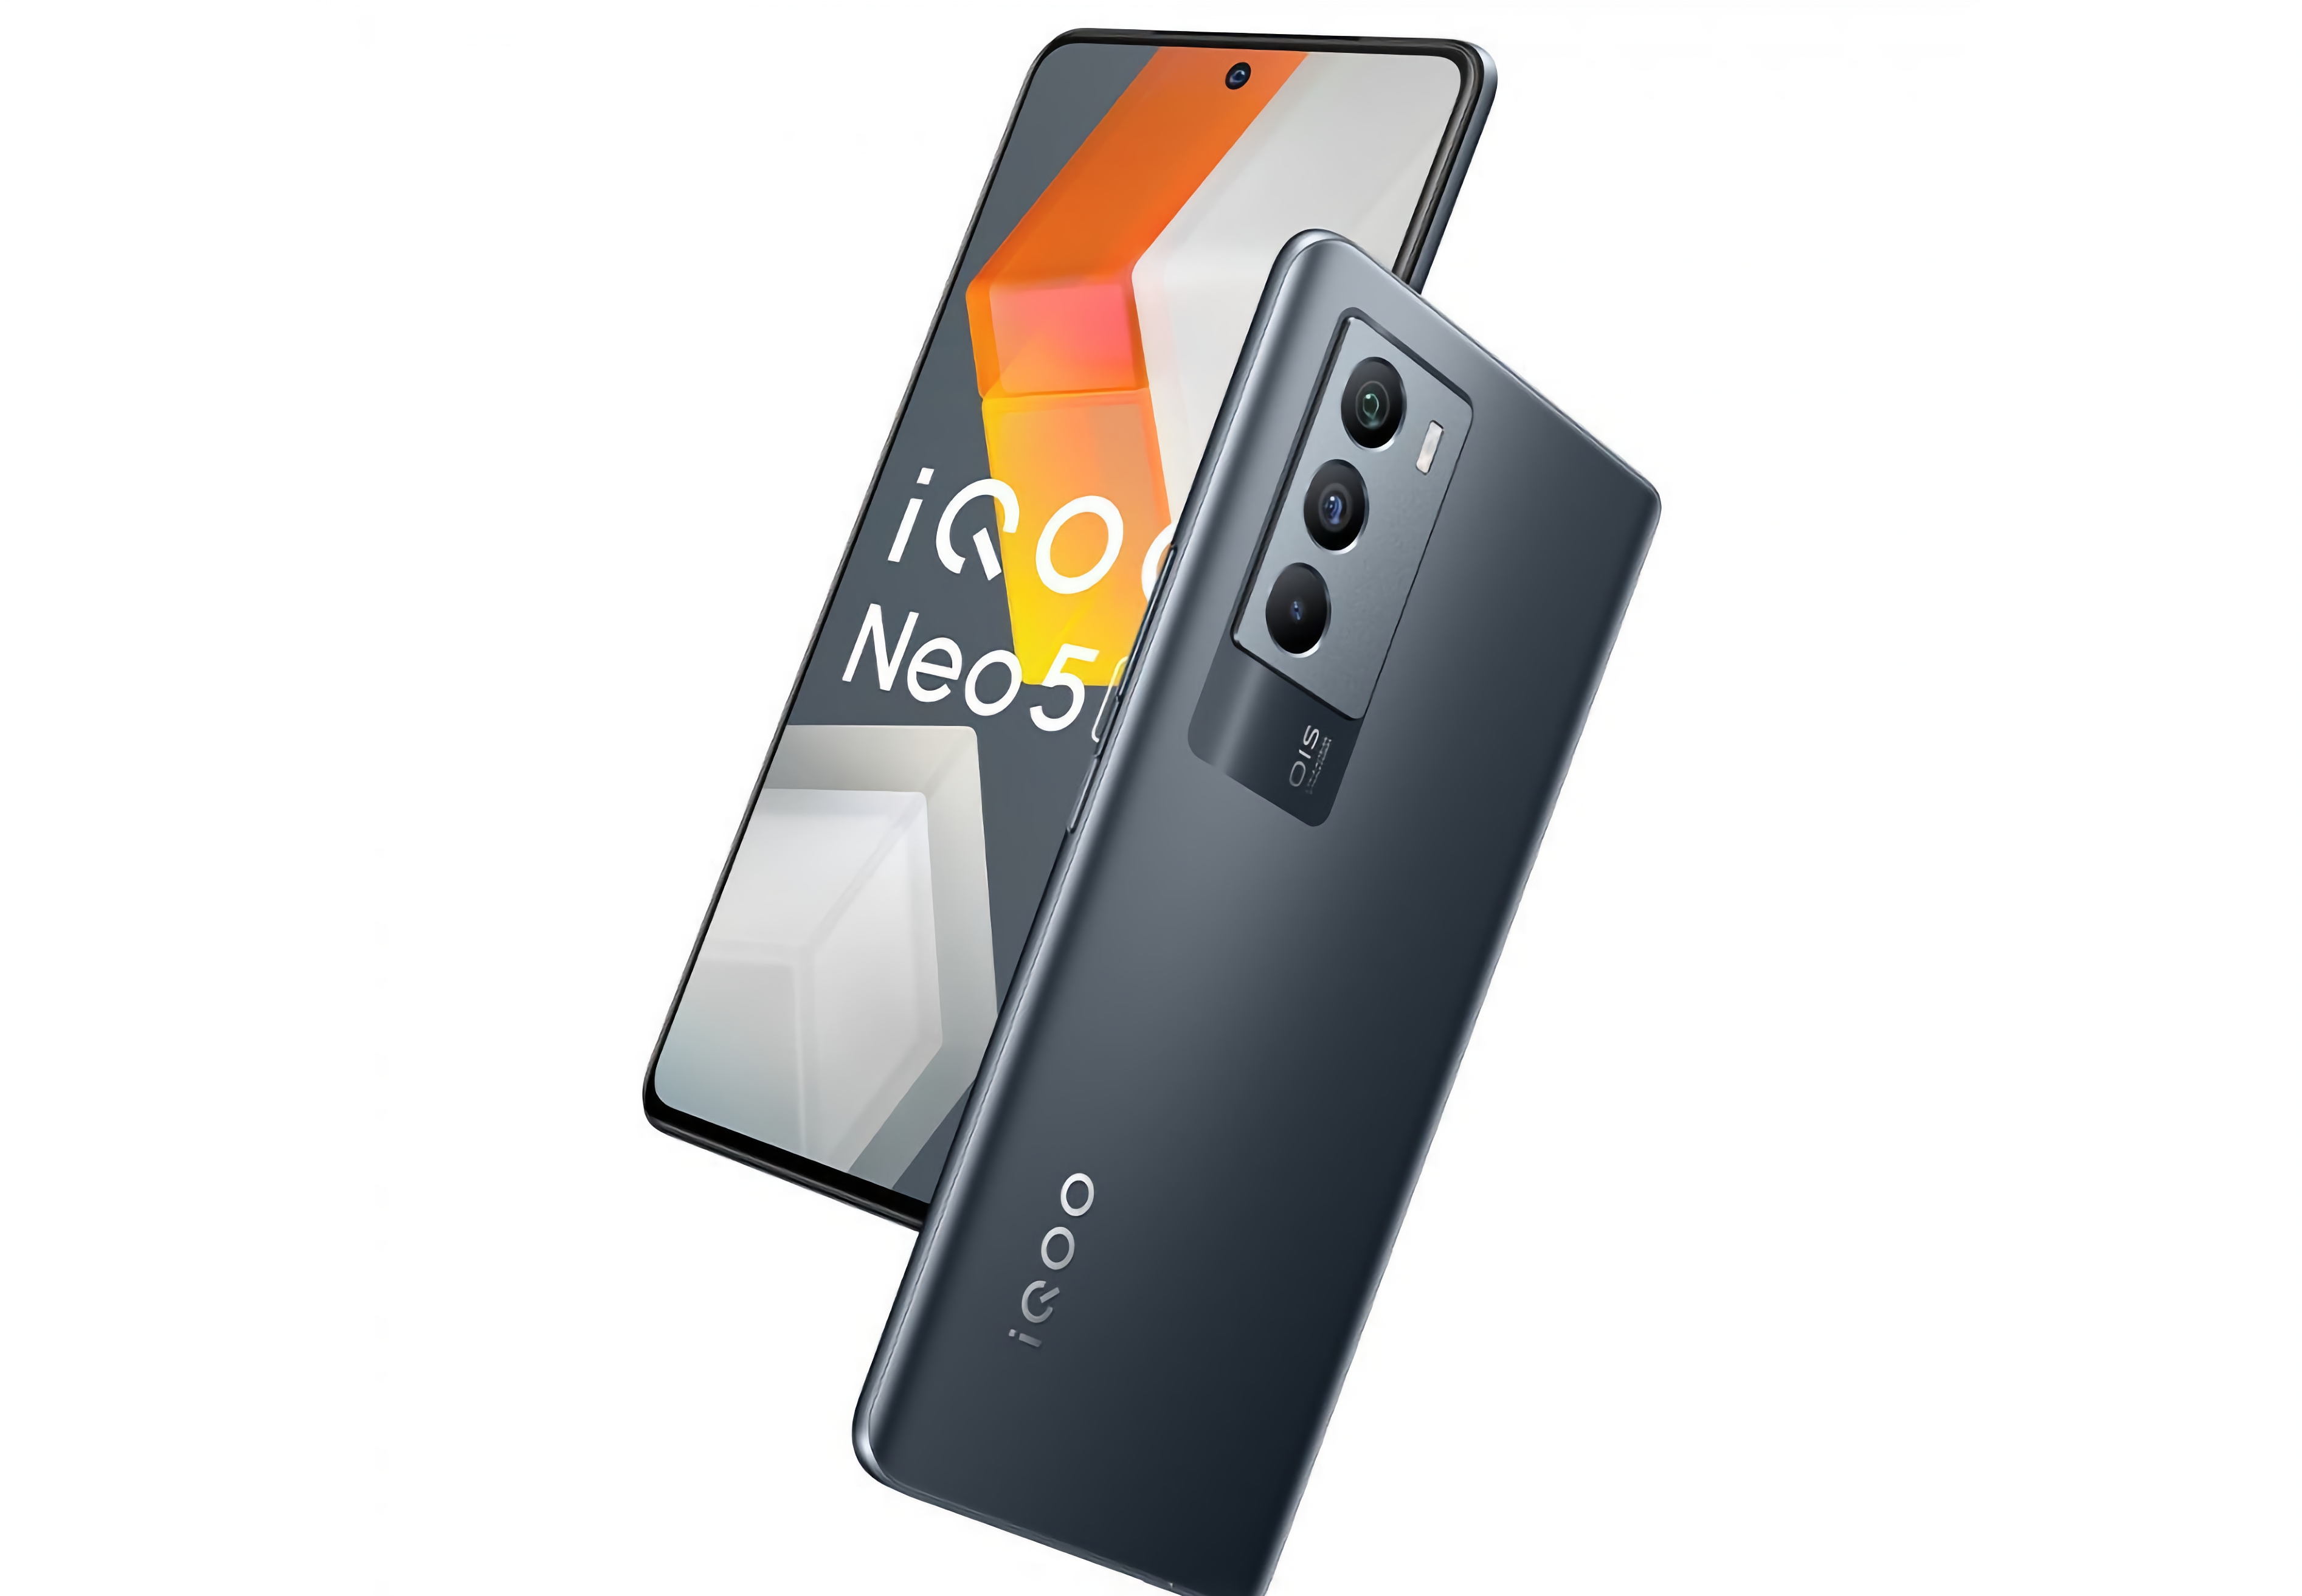 Tak będzie wyglądał iQOO Neo 5s – gamingowy smartfon z chipem Snapdragon 888, aparatem 48 MP i szybkim ładowaniem 66 W